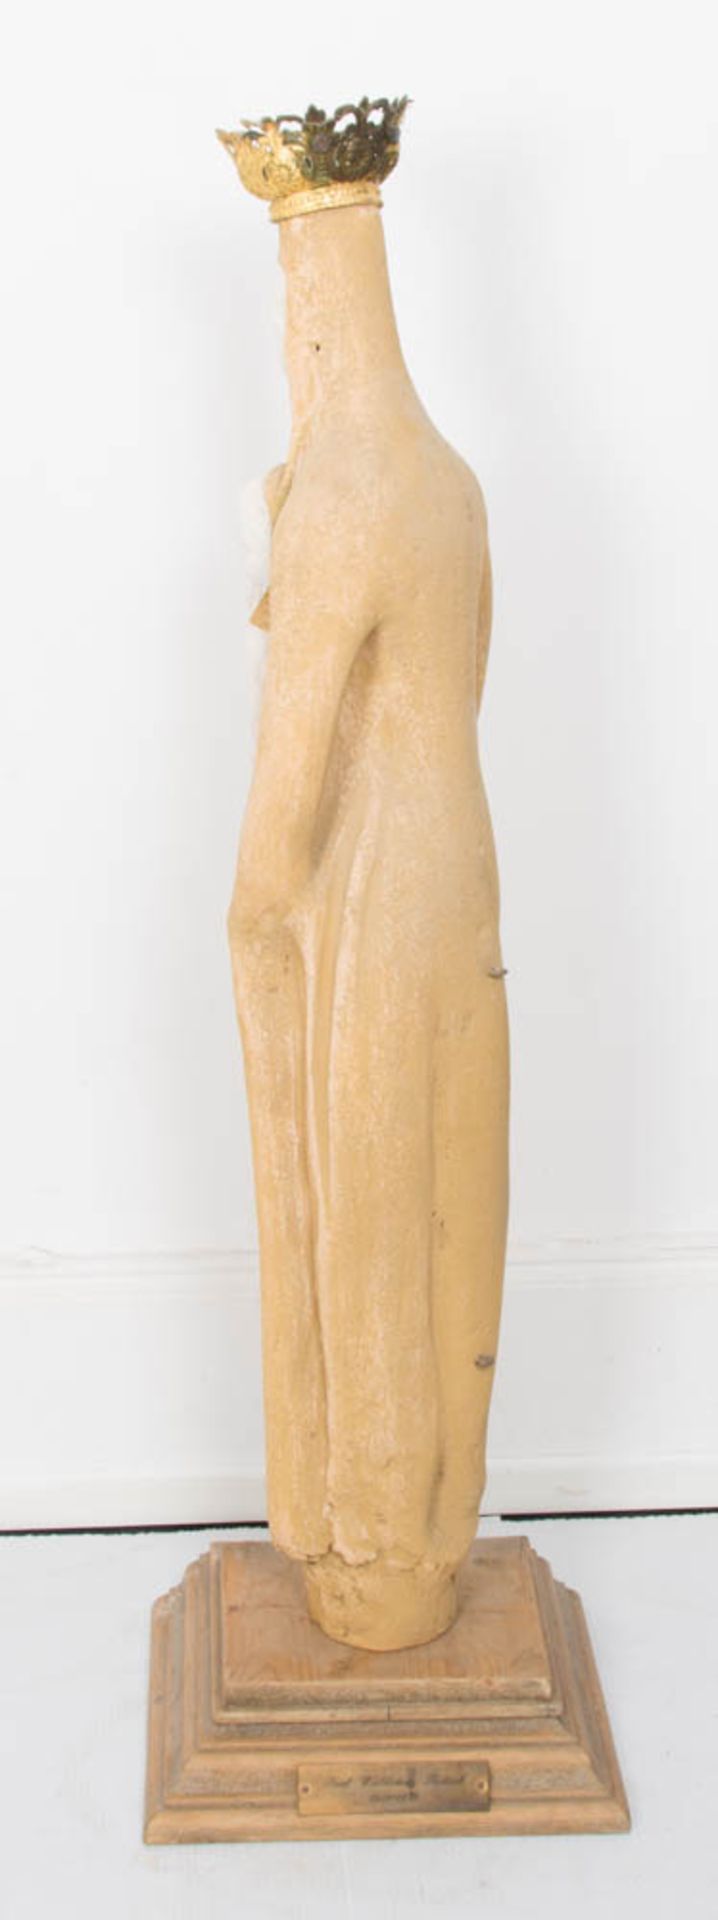 Skulptur der Madonna mit Kind auf Holzsockel. Stein/Metall/Holz. - Bild 6 aus 7